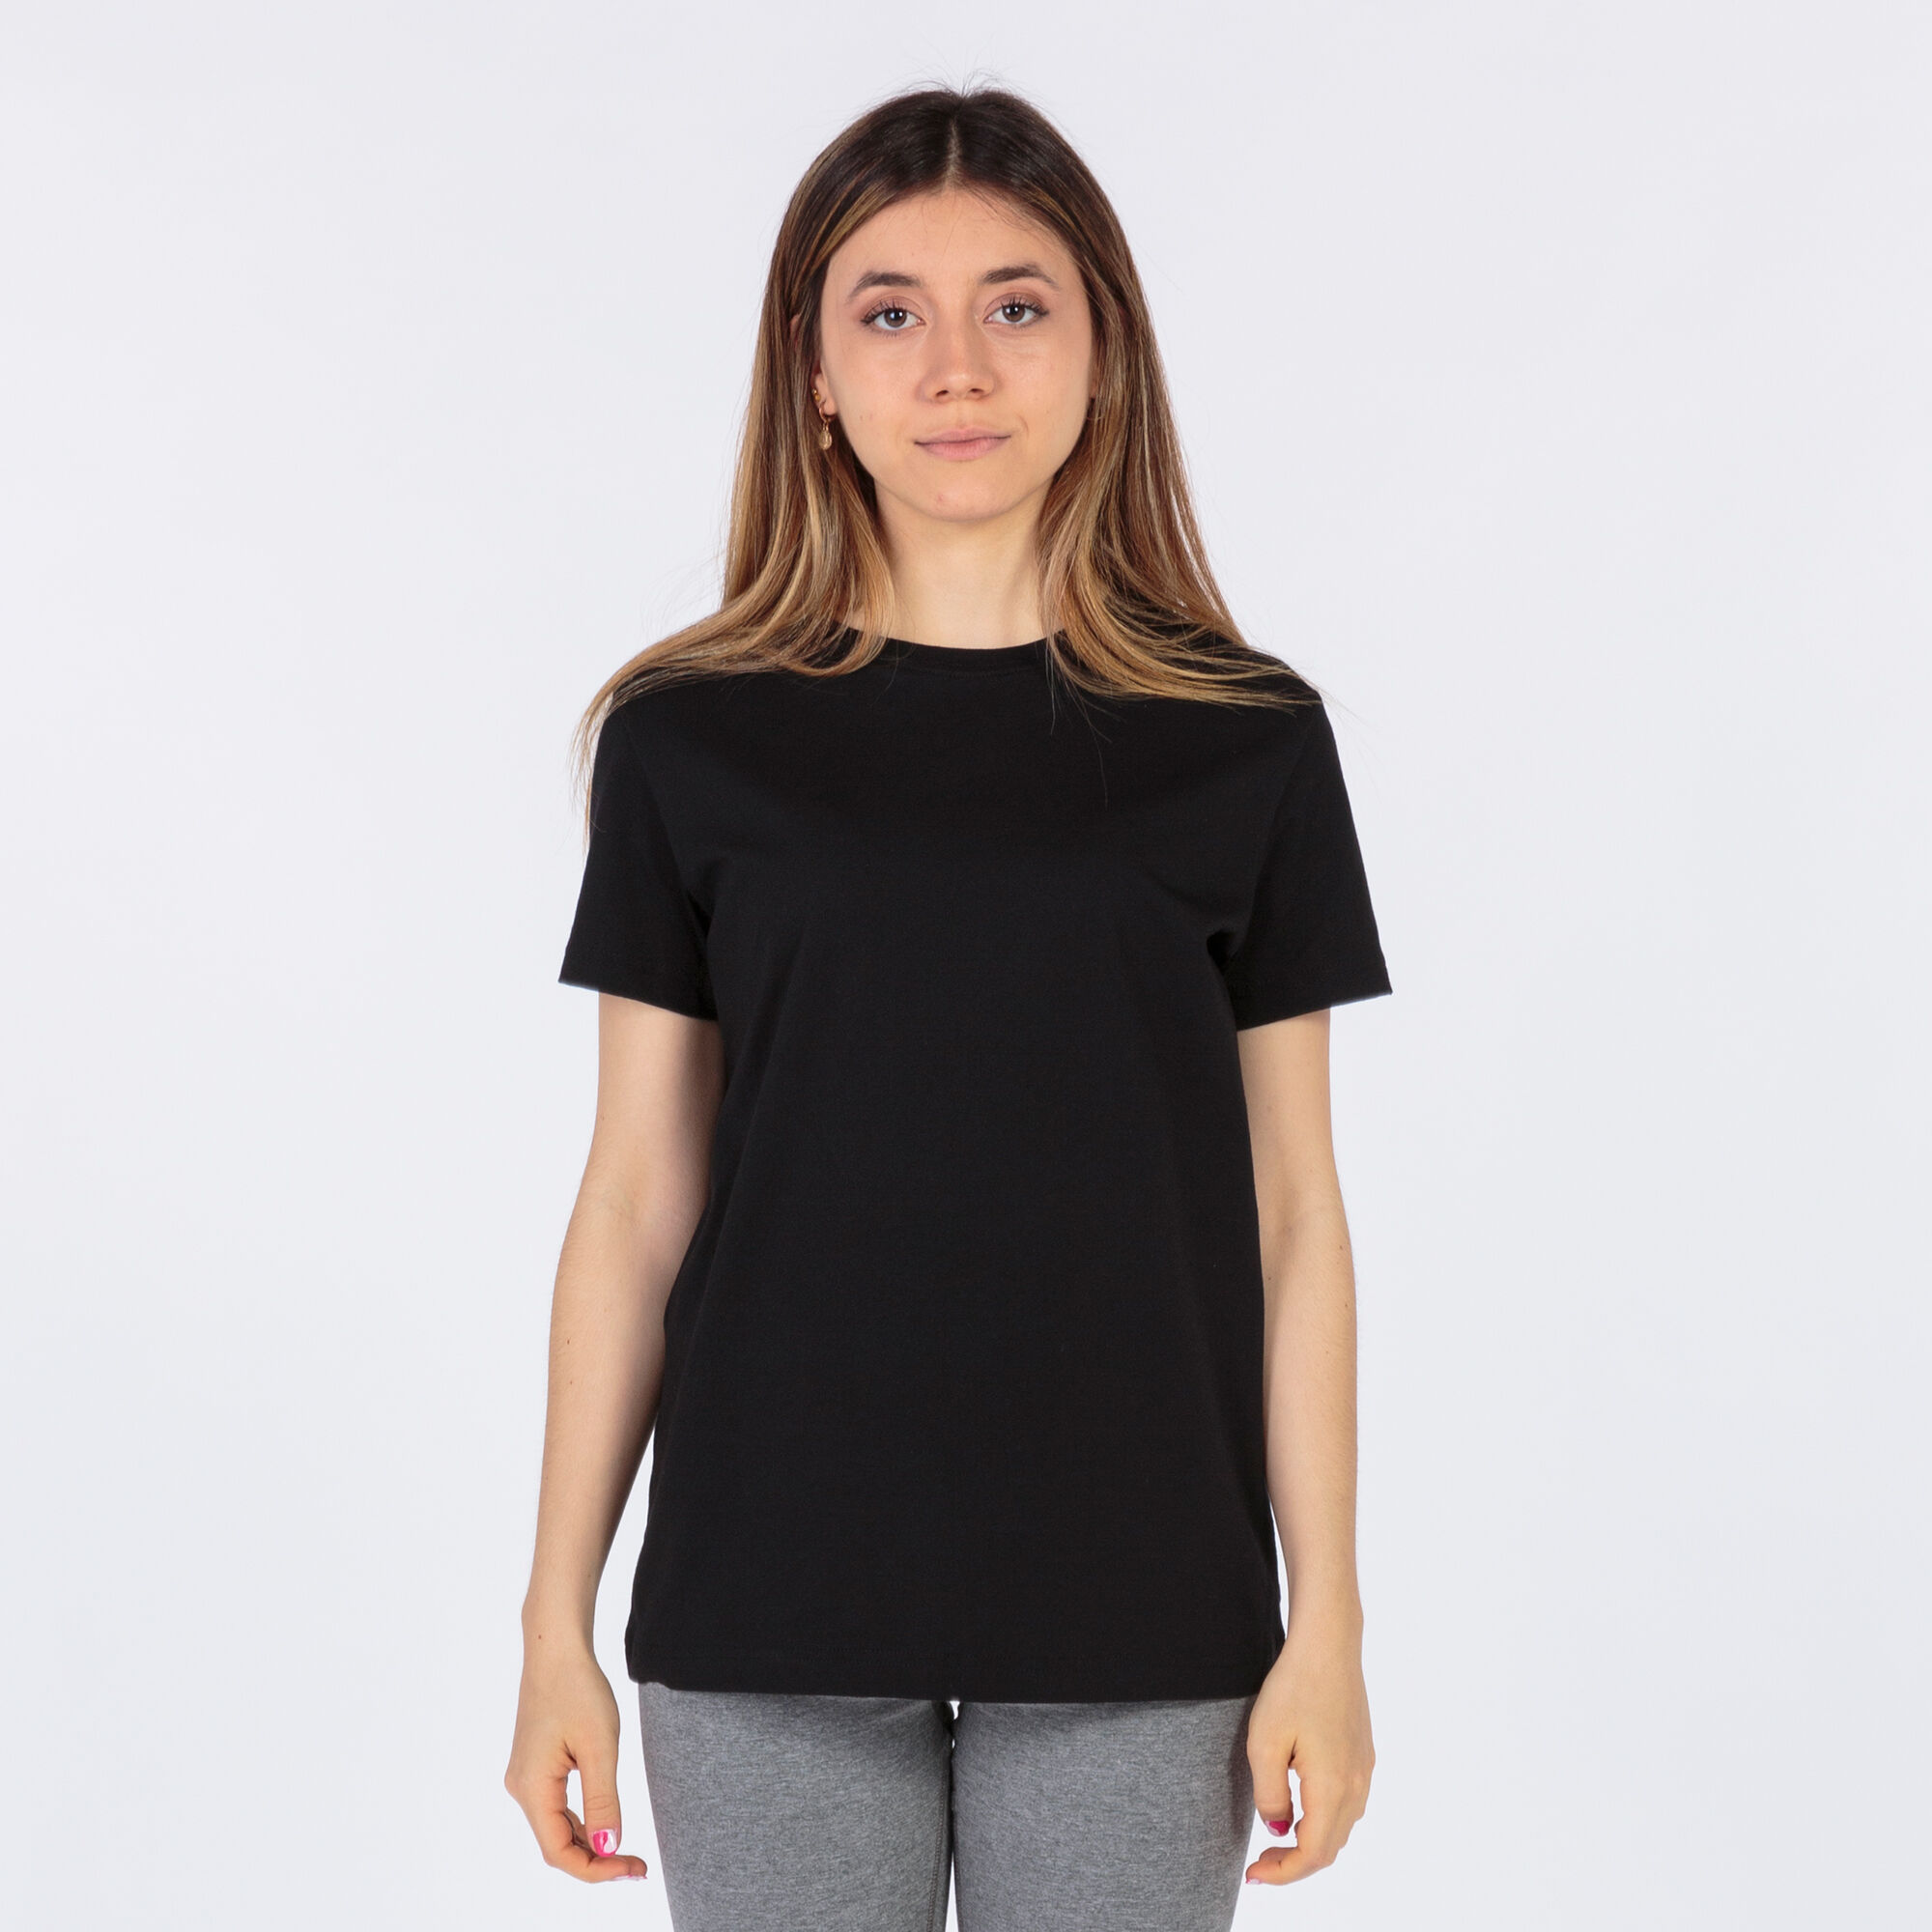 Camiseta manga corta mujer Desert negro